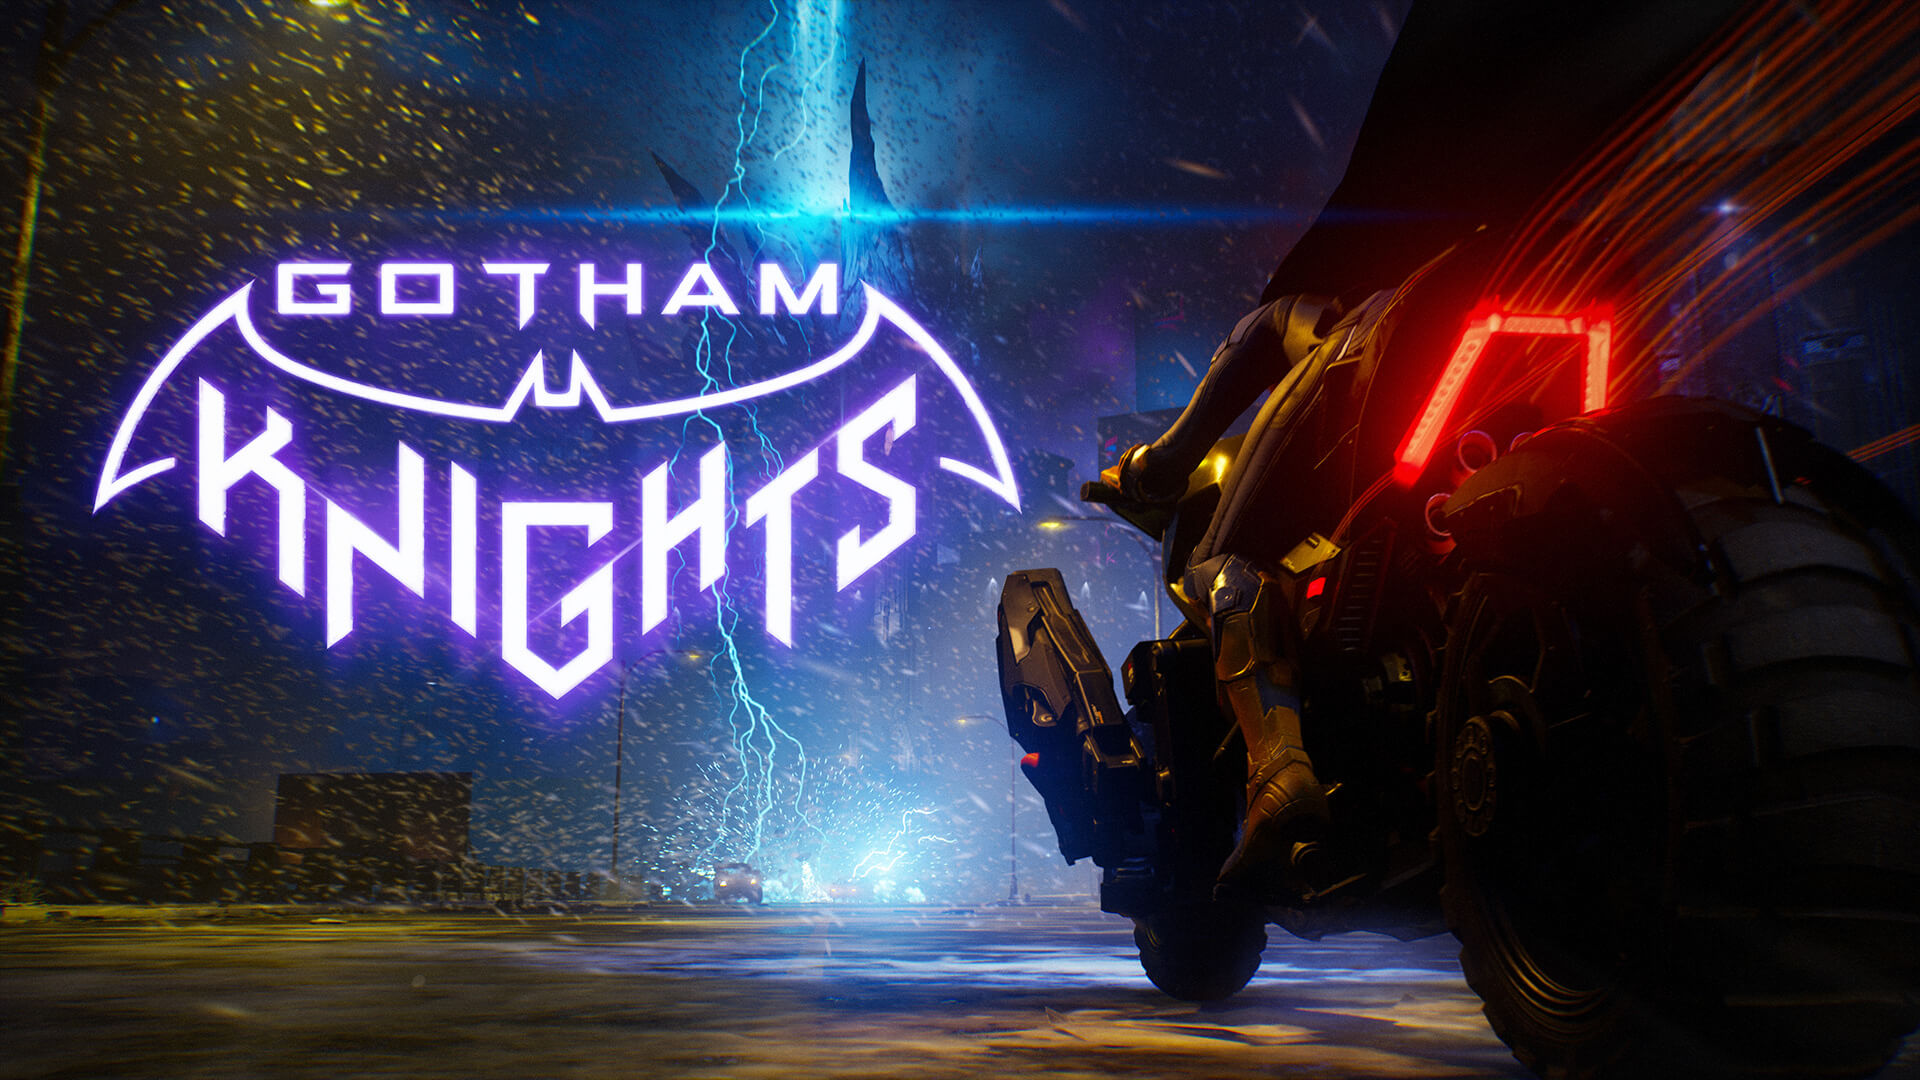 اولین نگاه به گیم پلی بازی Gotham Knights